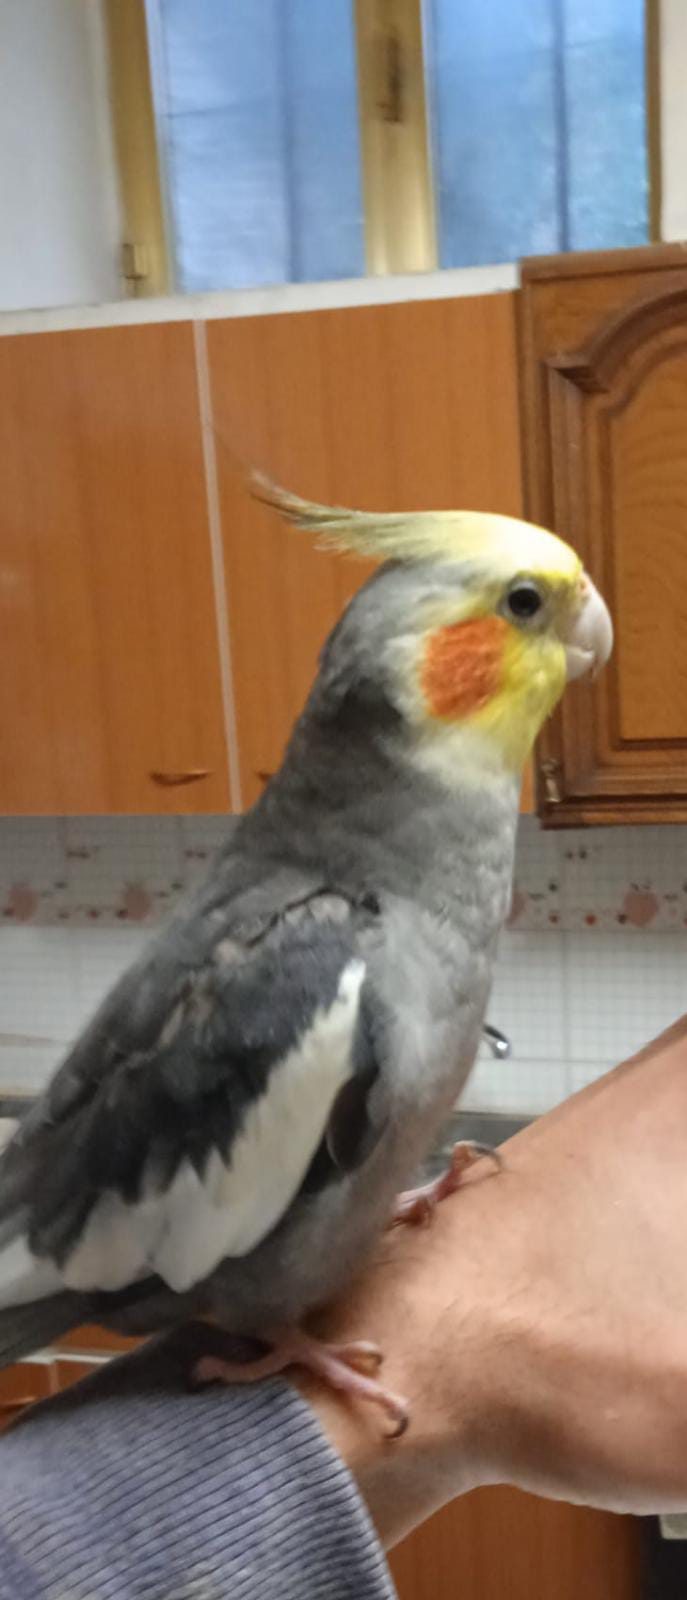 SOS 2 ZAMPE. BAIANO, è scomparso Ciro, pappagallo di 8 mesi. Aiutaci a ritrovarlo